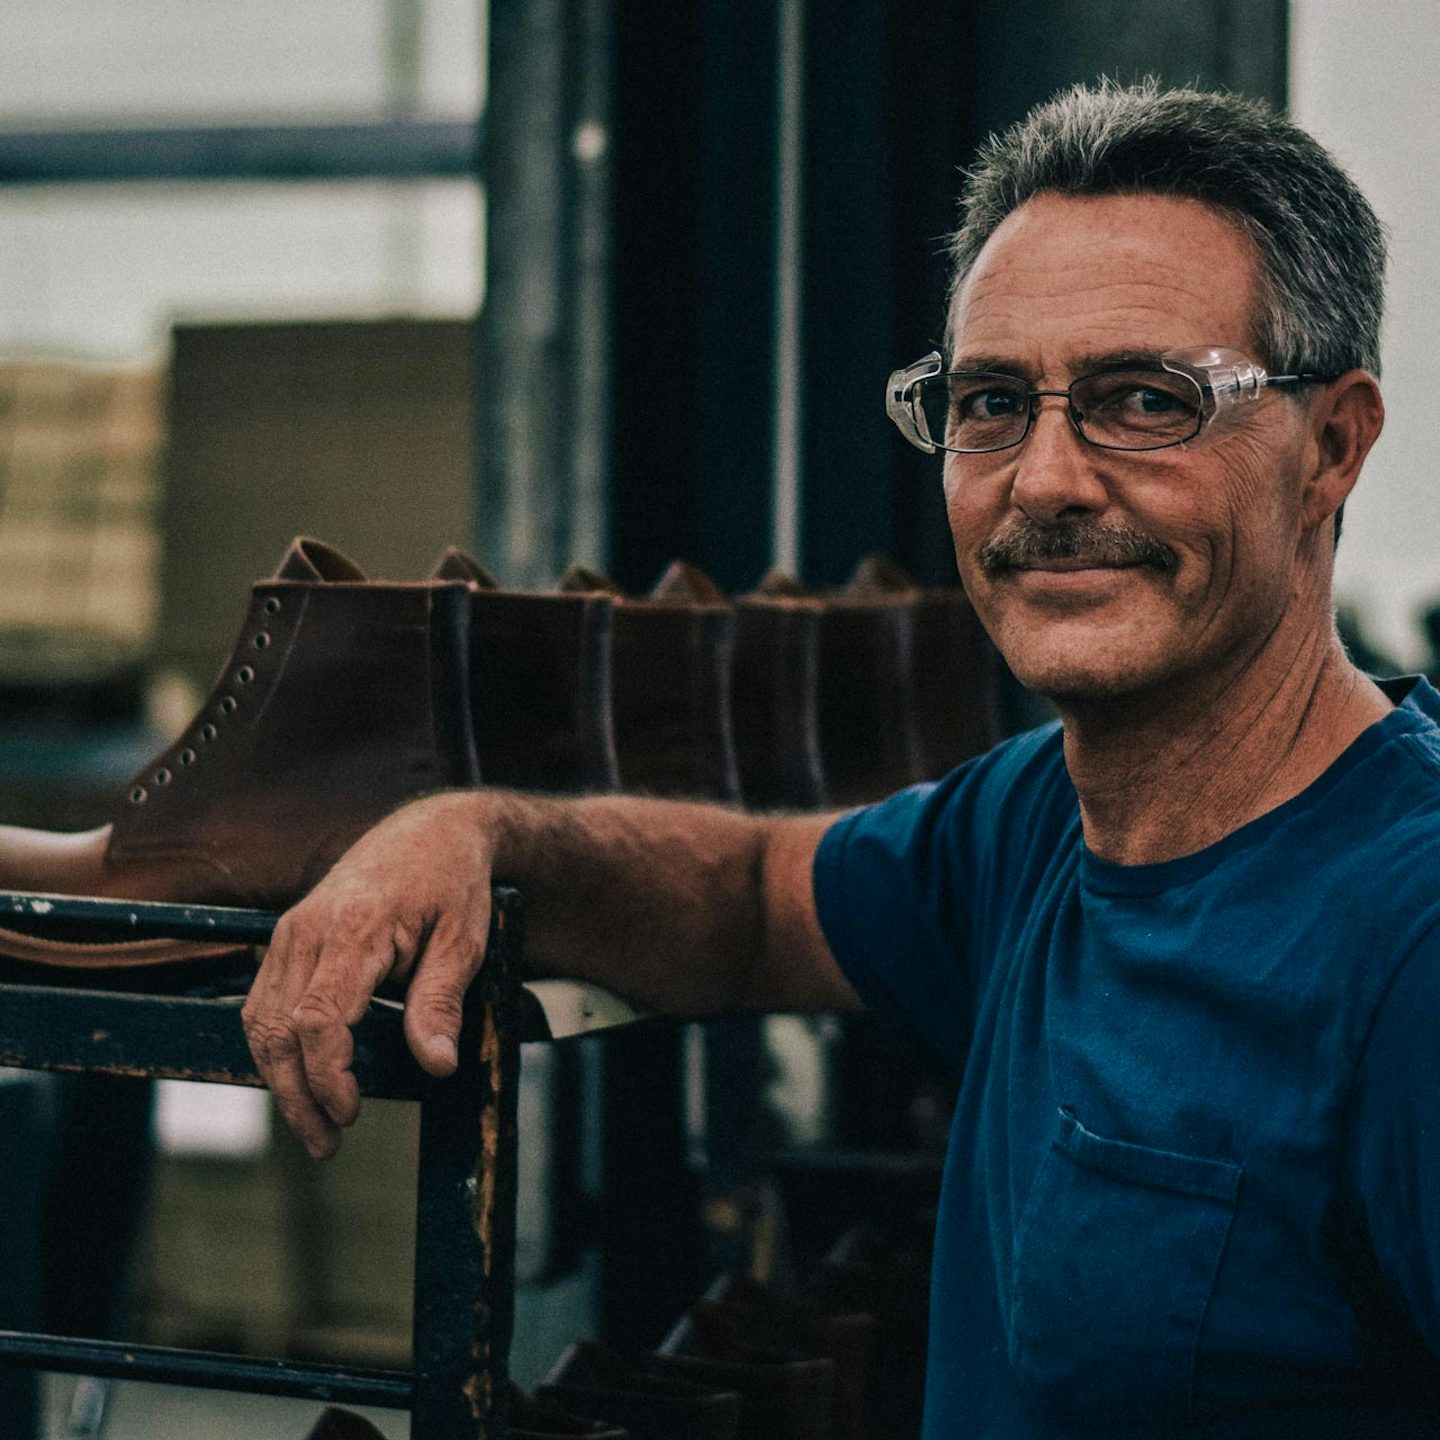 A proud bootmaker at an Oak Street Bootmakers Factory